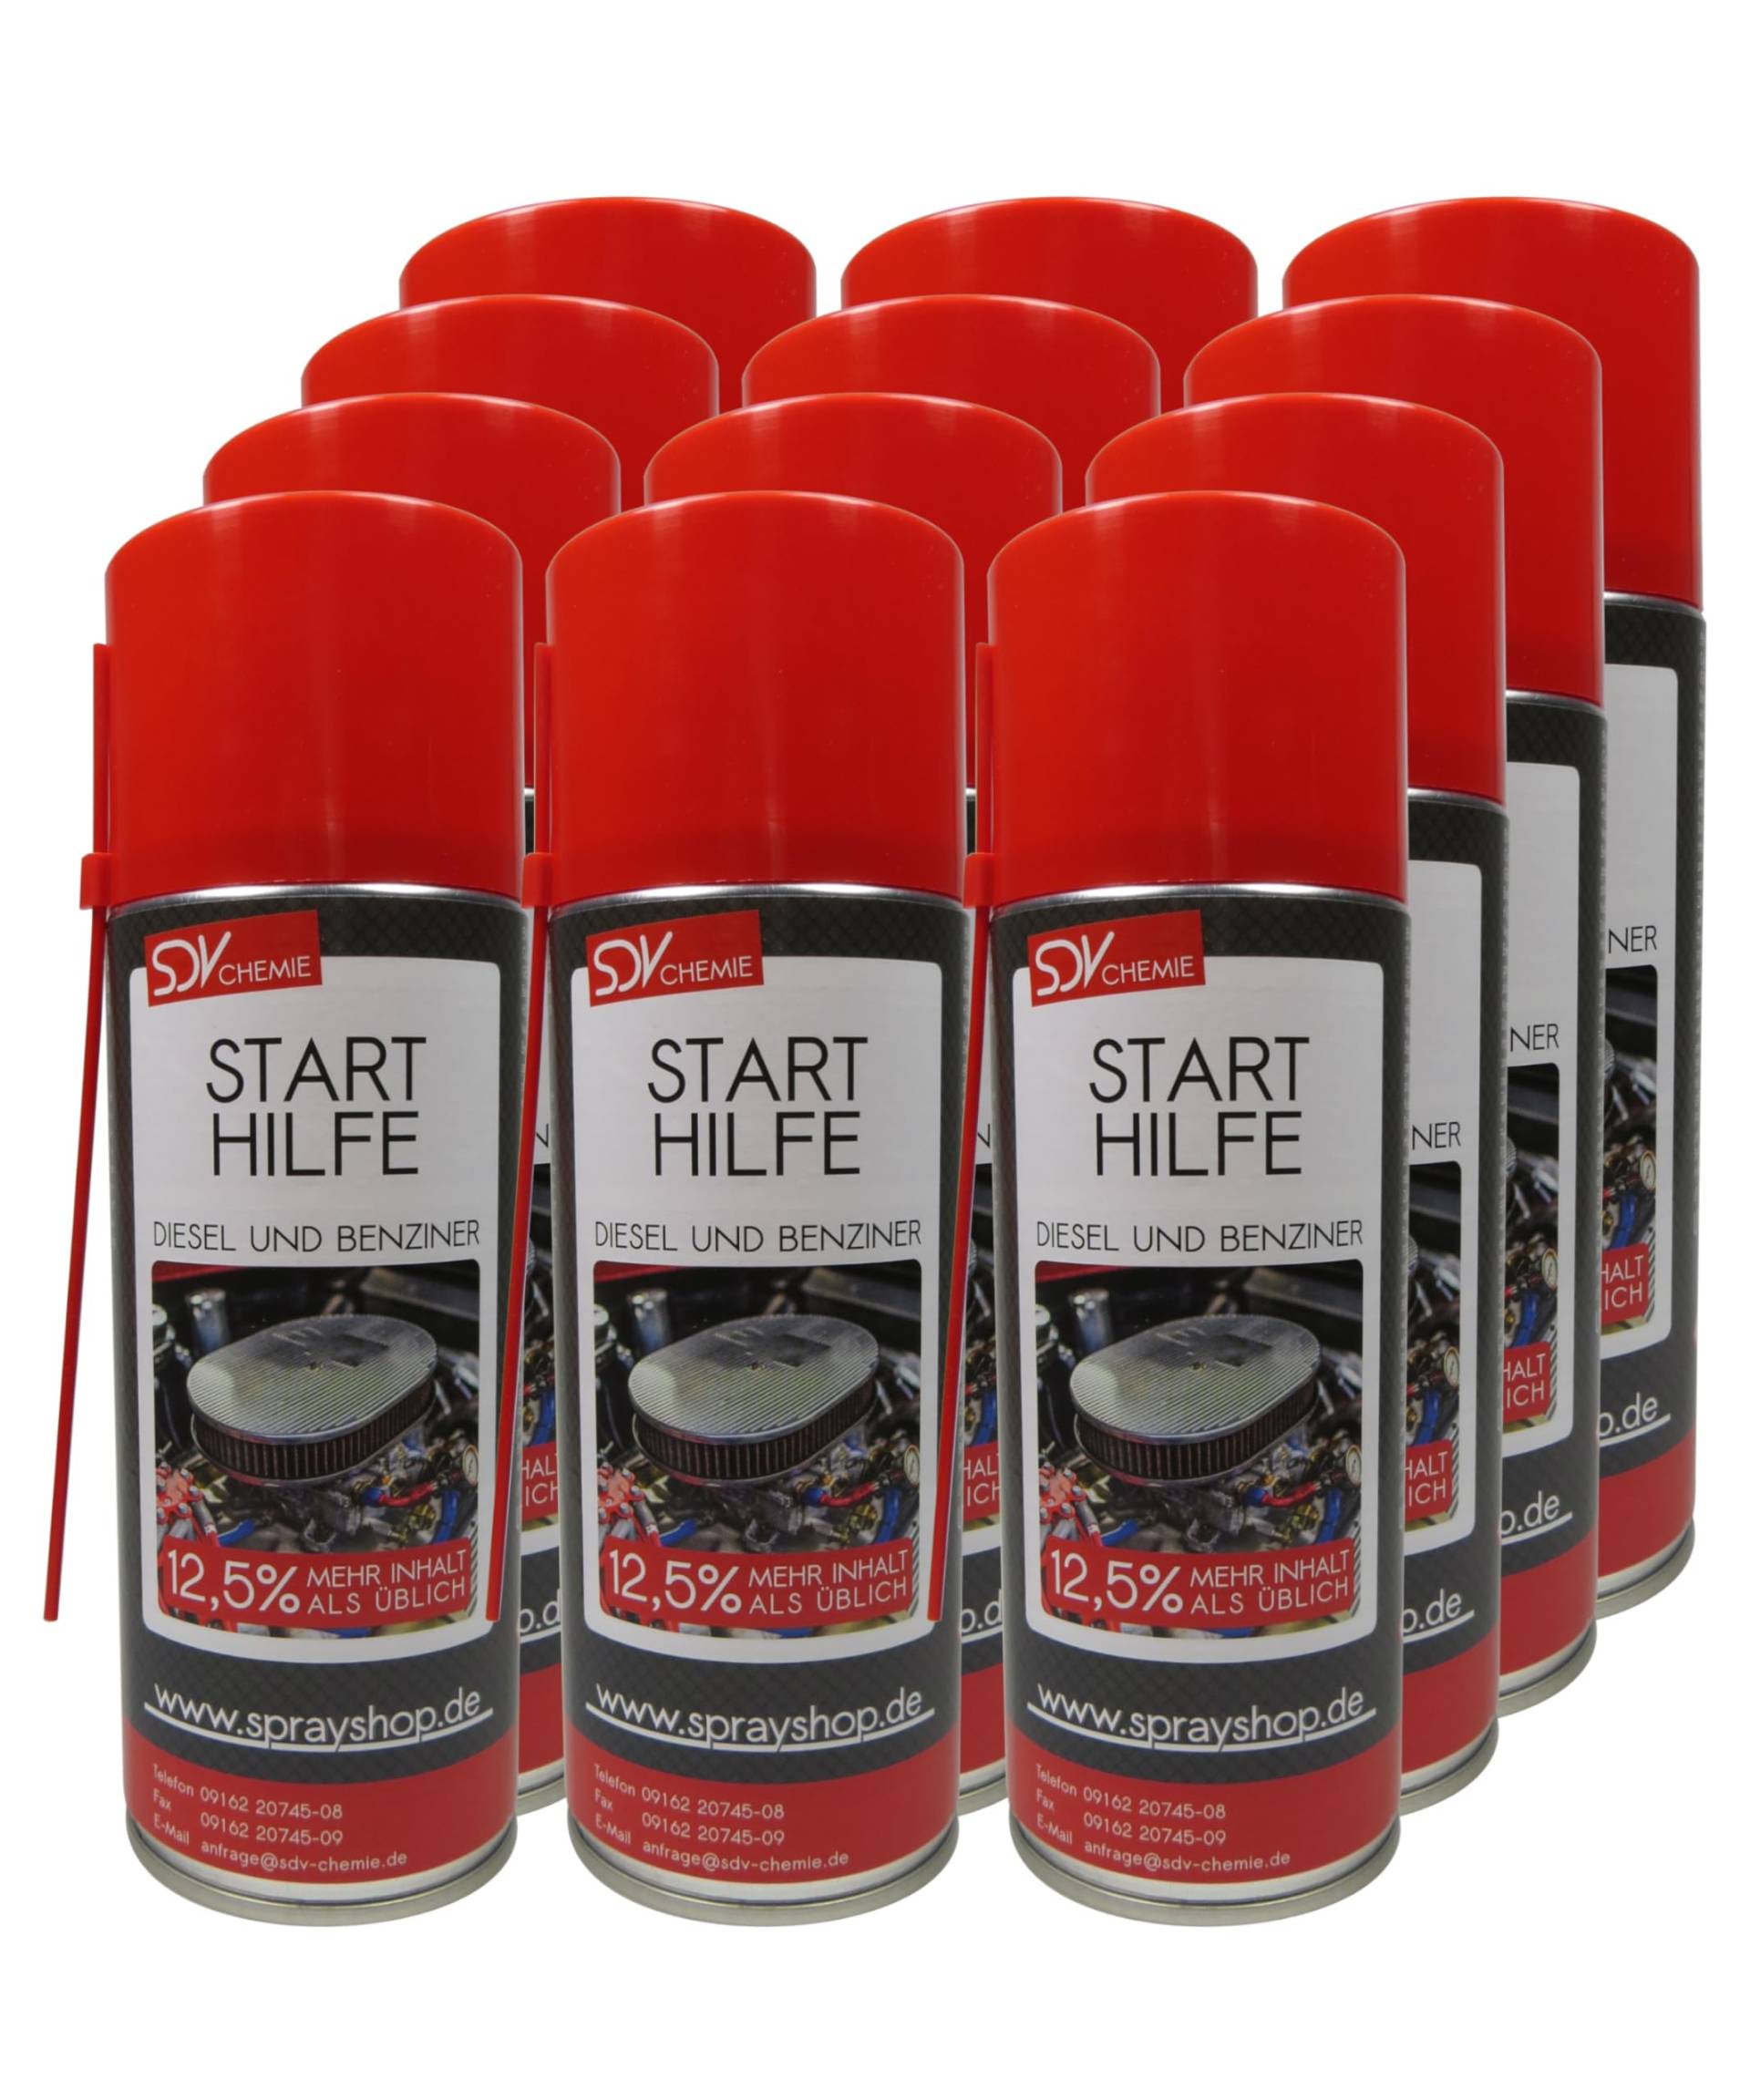 SDV Chemie Motorstarter Starthilfespray 12x 400ml Motorstartspray Starterspray Starthilfe von SDV Chemie